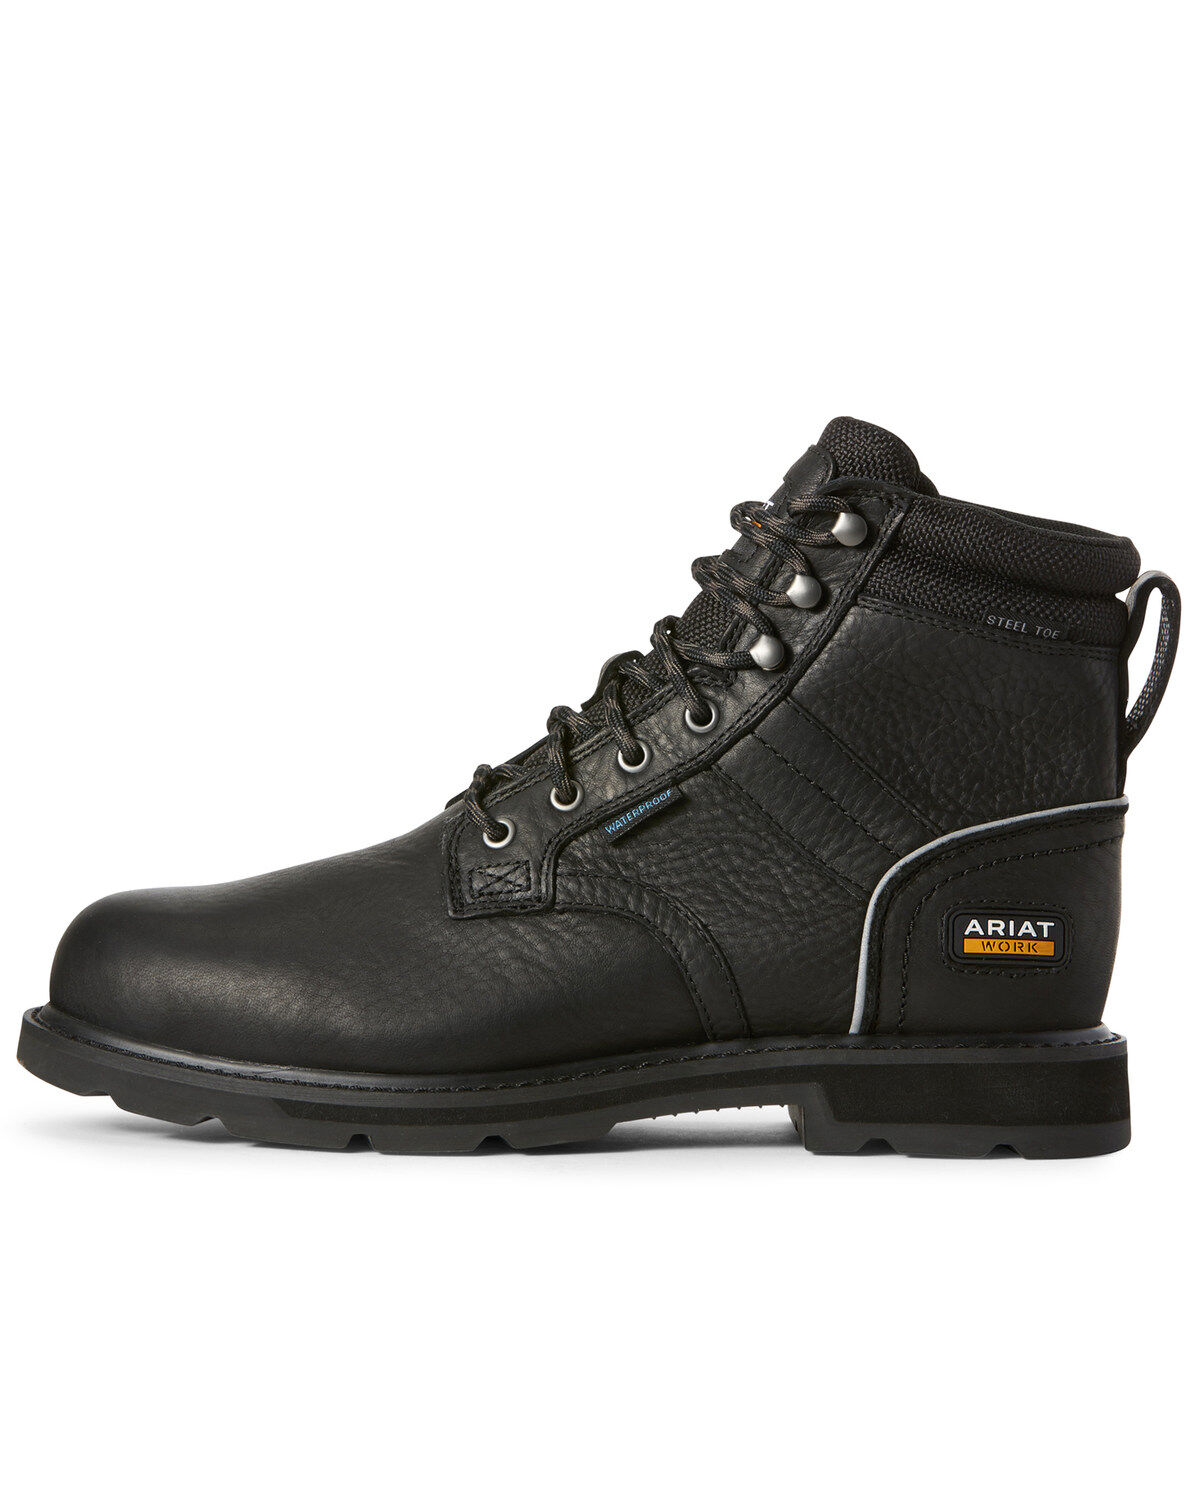 ariat work boots steel toe waterproof